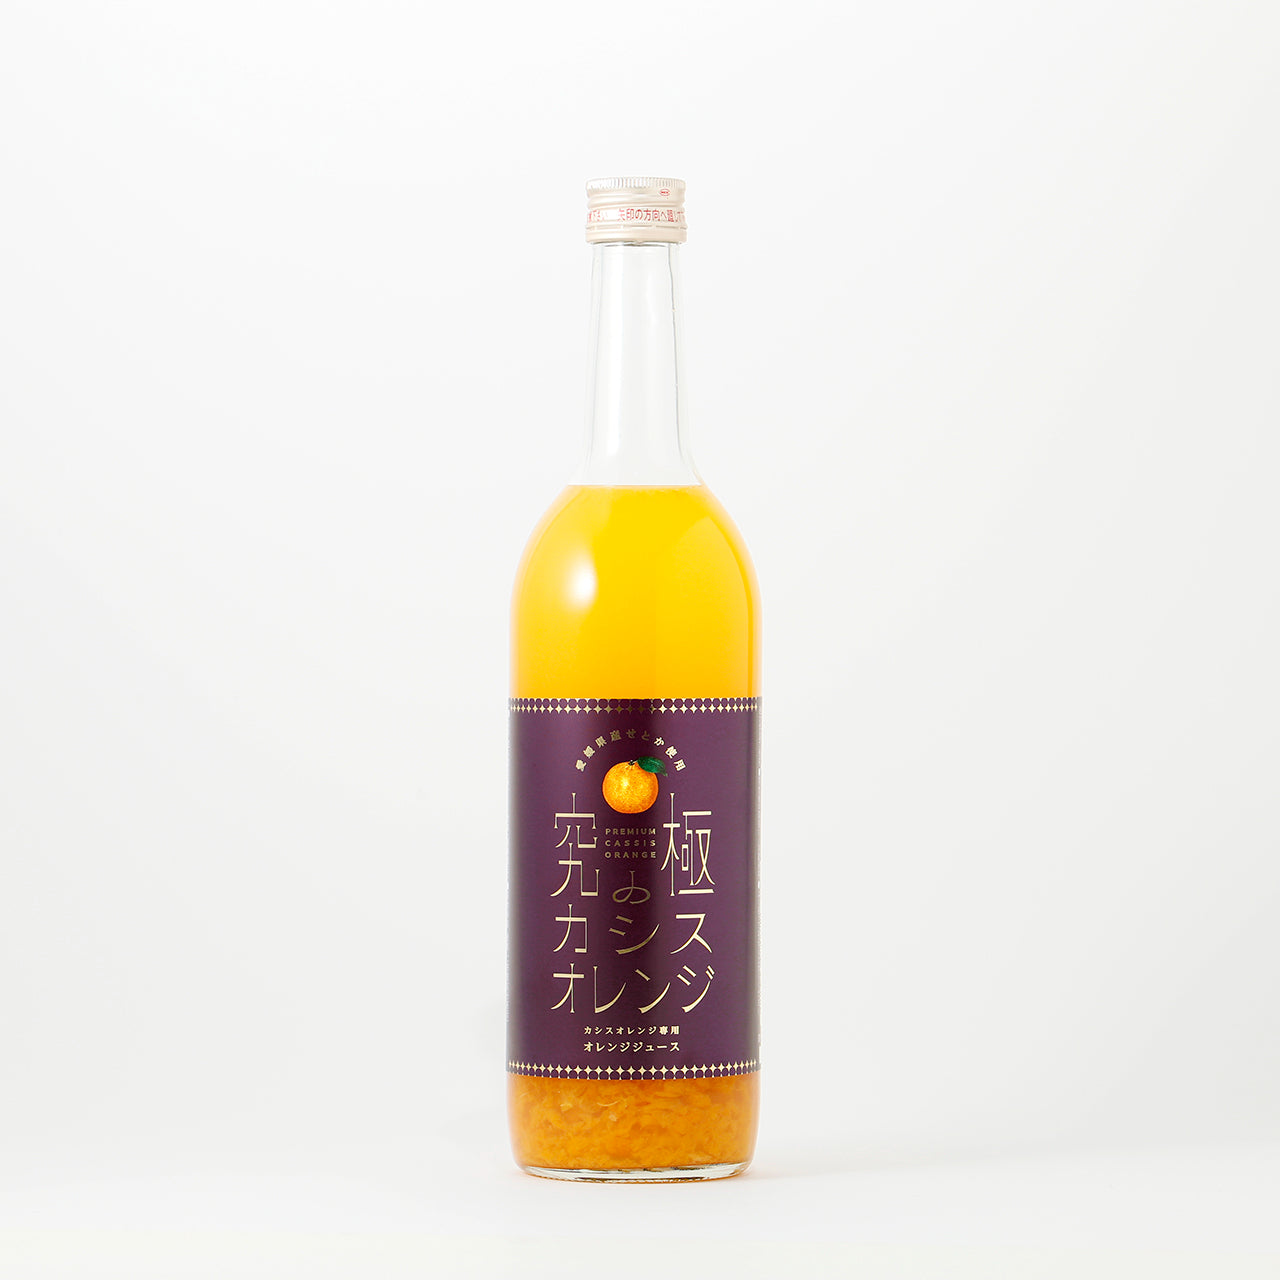 究極のカシスオレンジ | 奈良県の果実酒 | 酒・日本酒の通販ならKURAND 